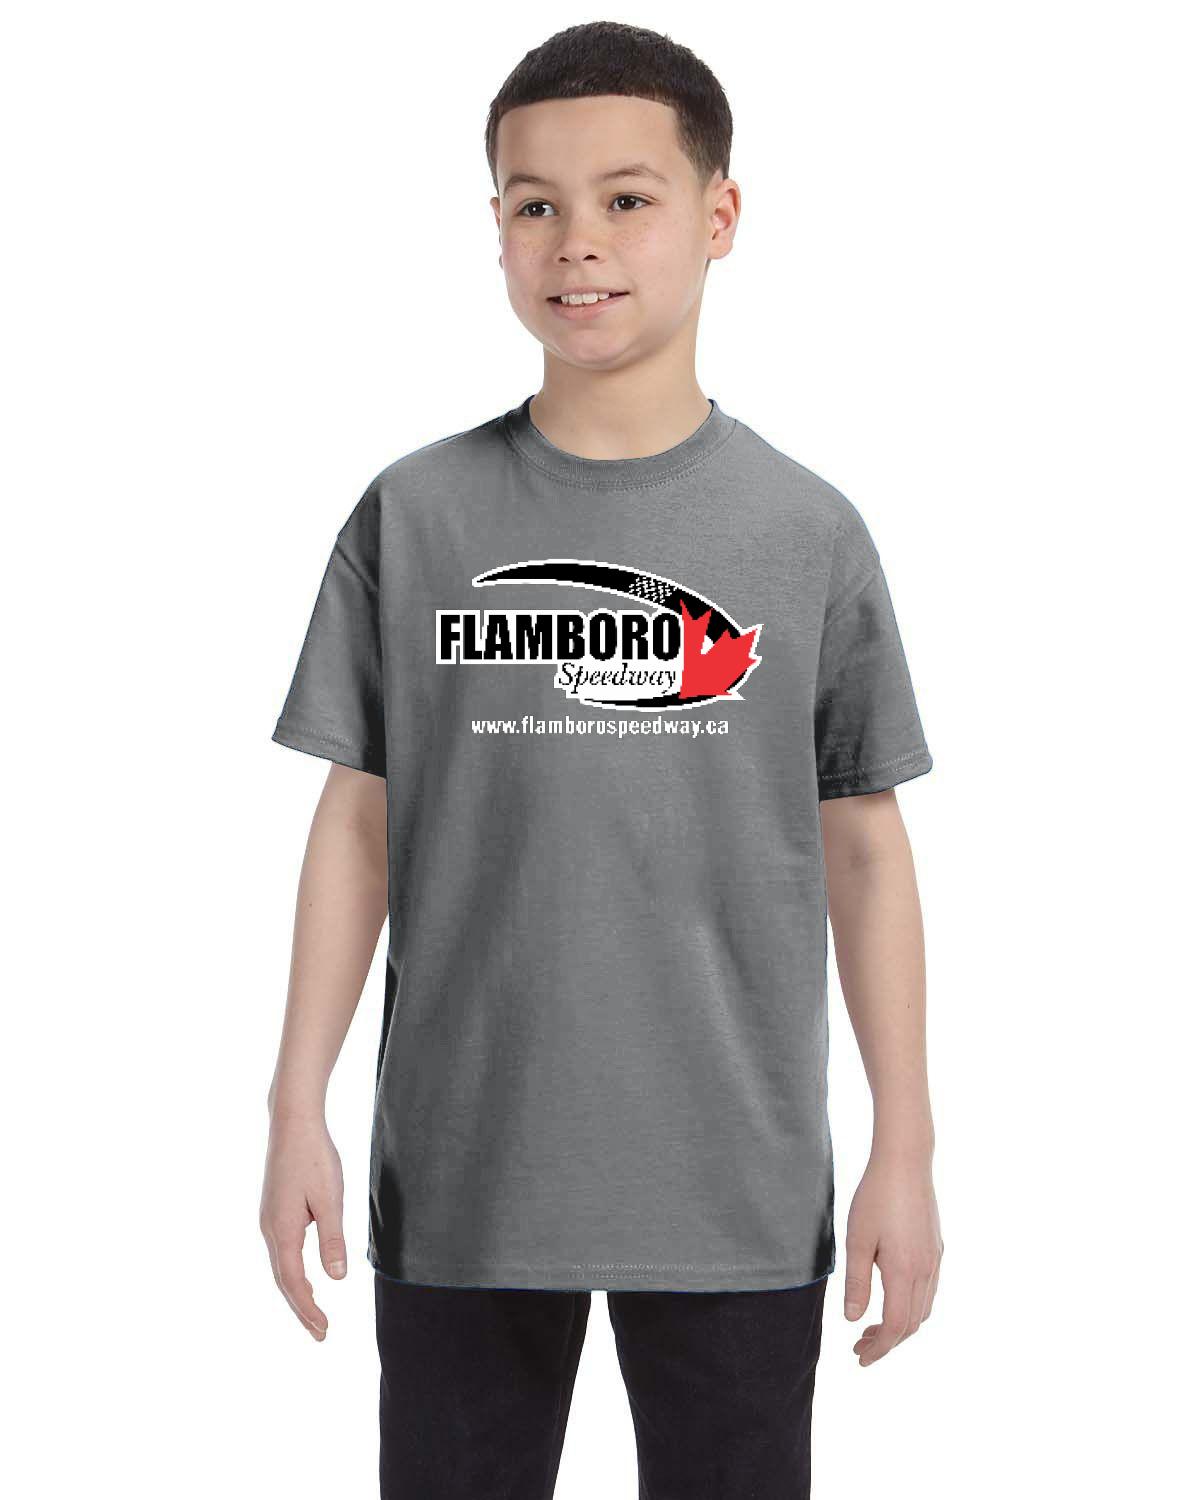 Flamboro Speedway Kid's T-Shirt